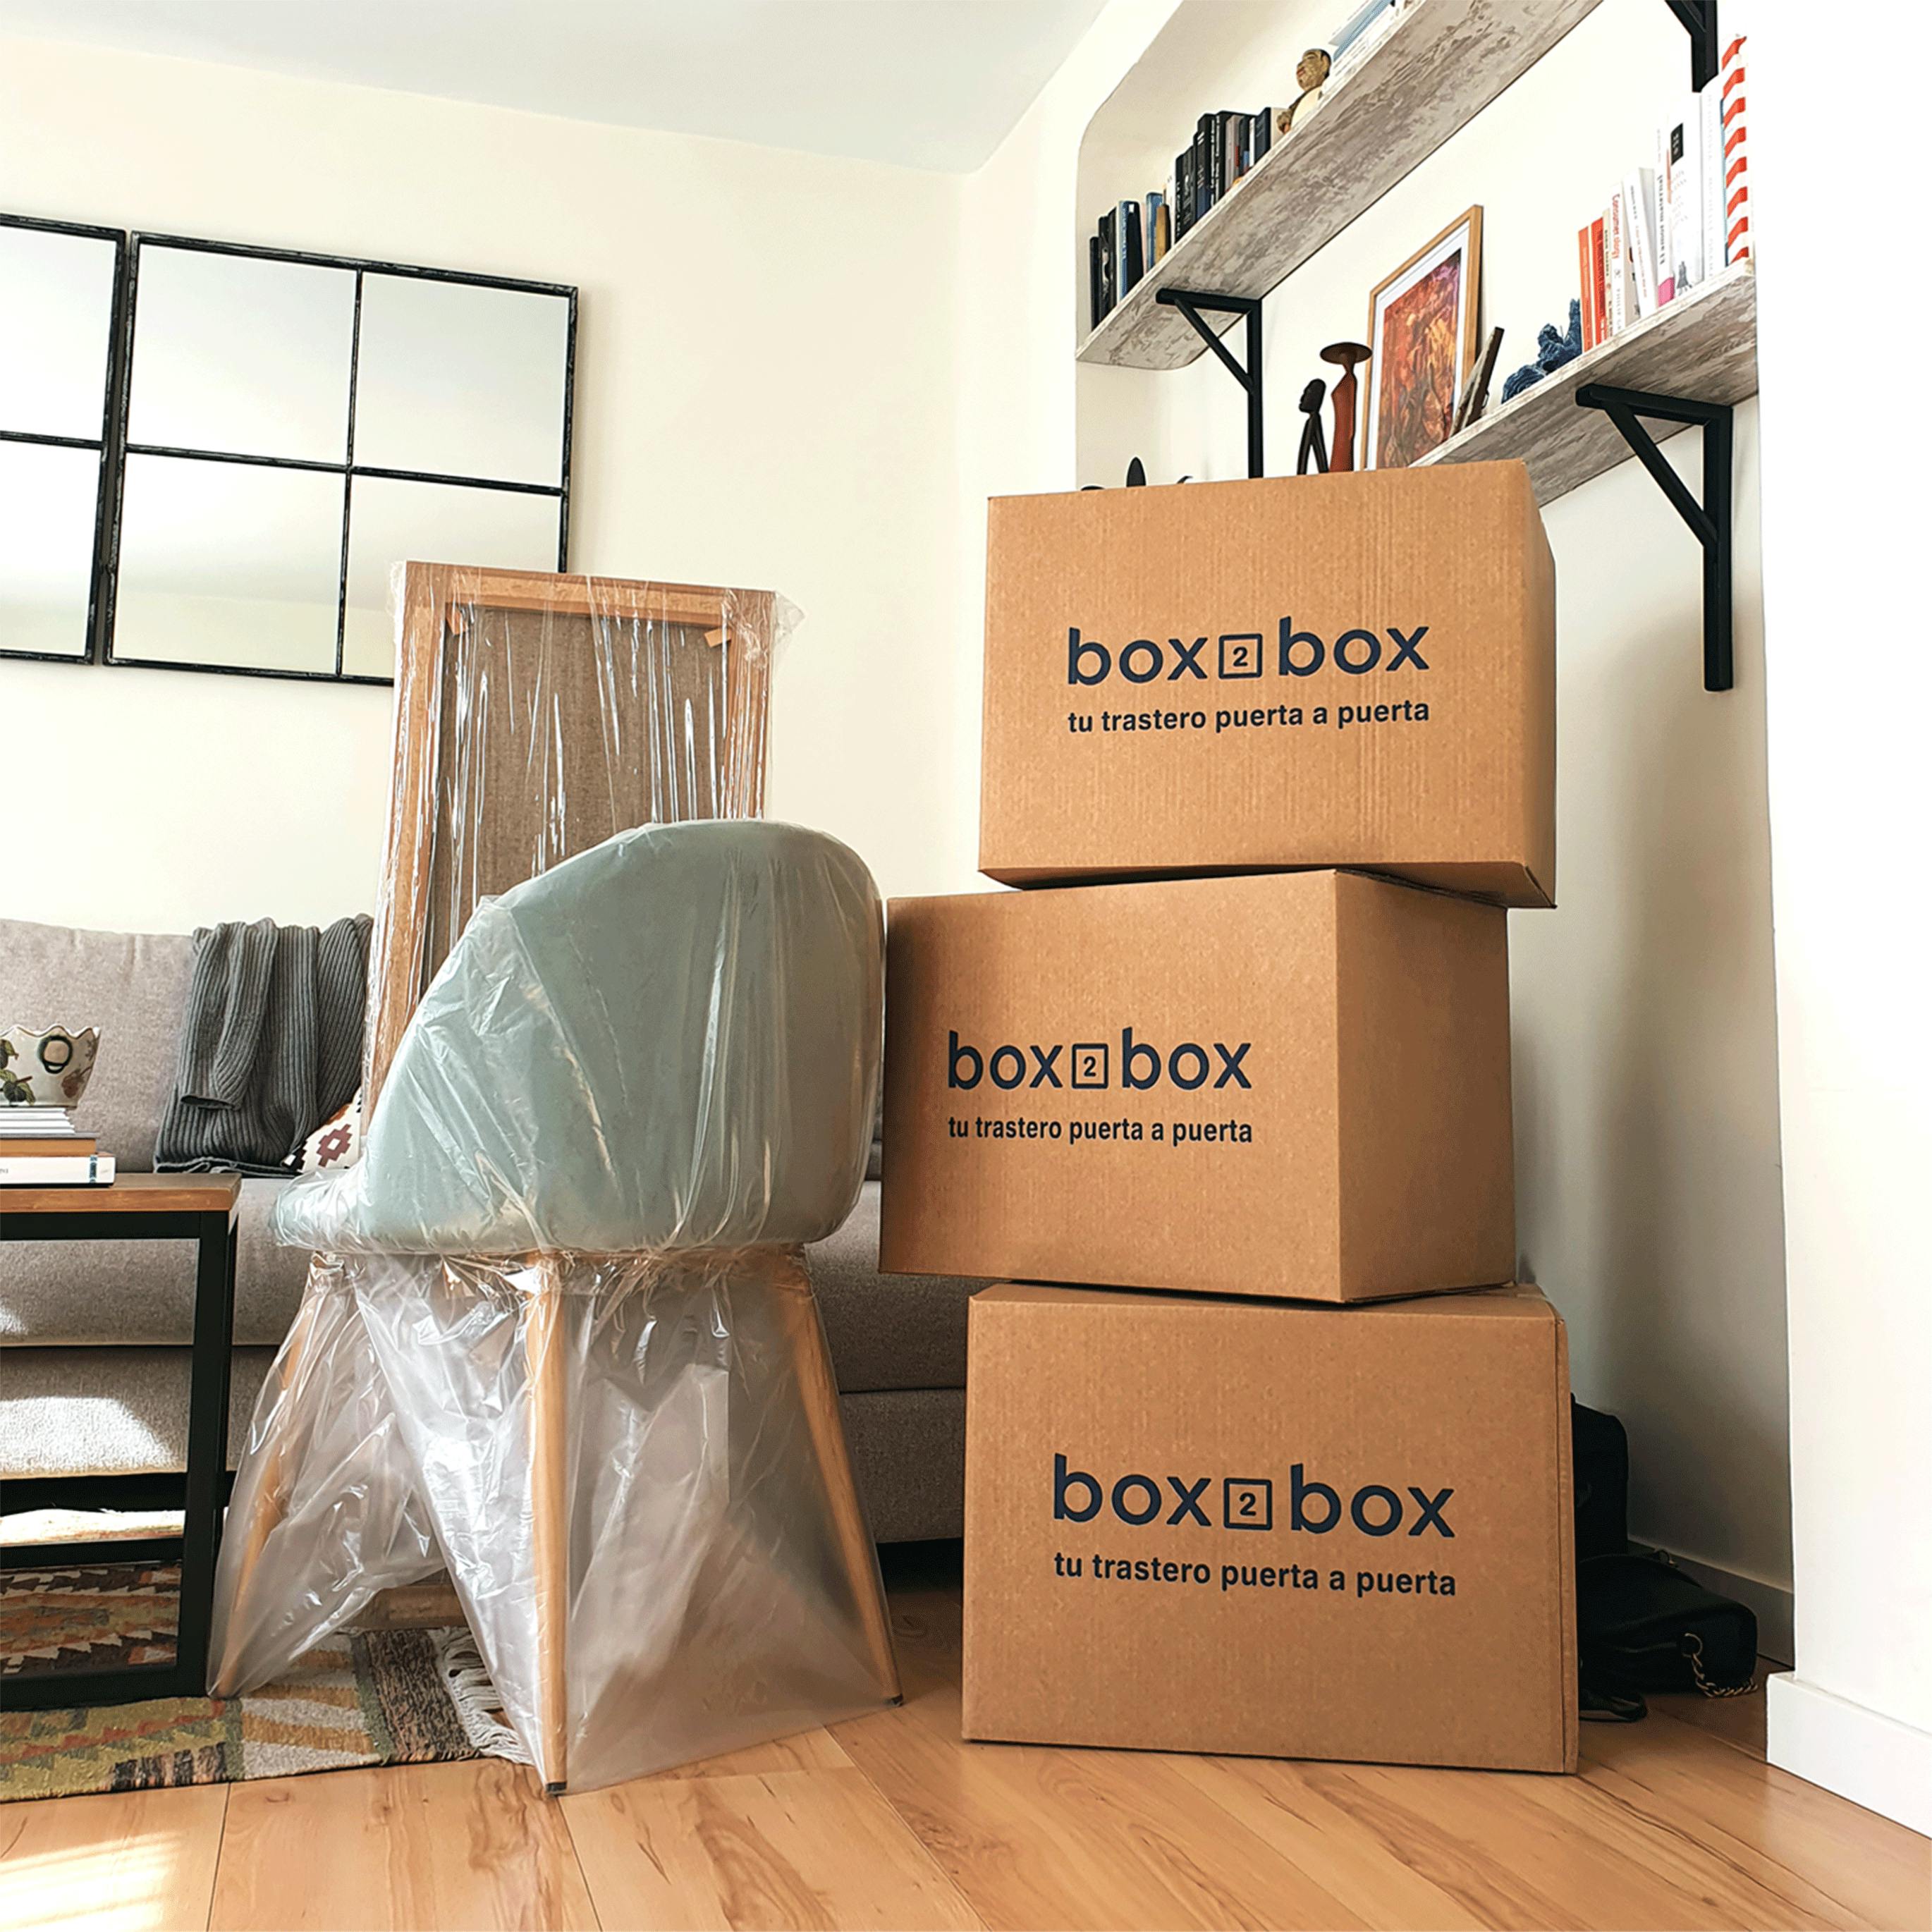 Box2box trabaja con materiales de calidad. 